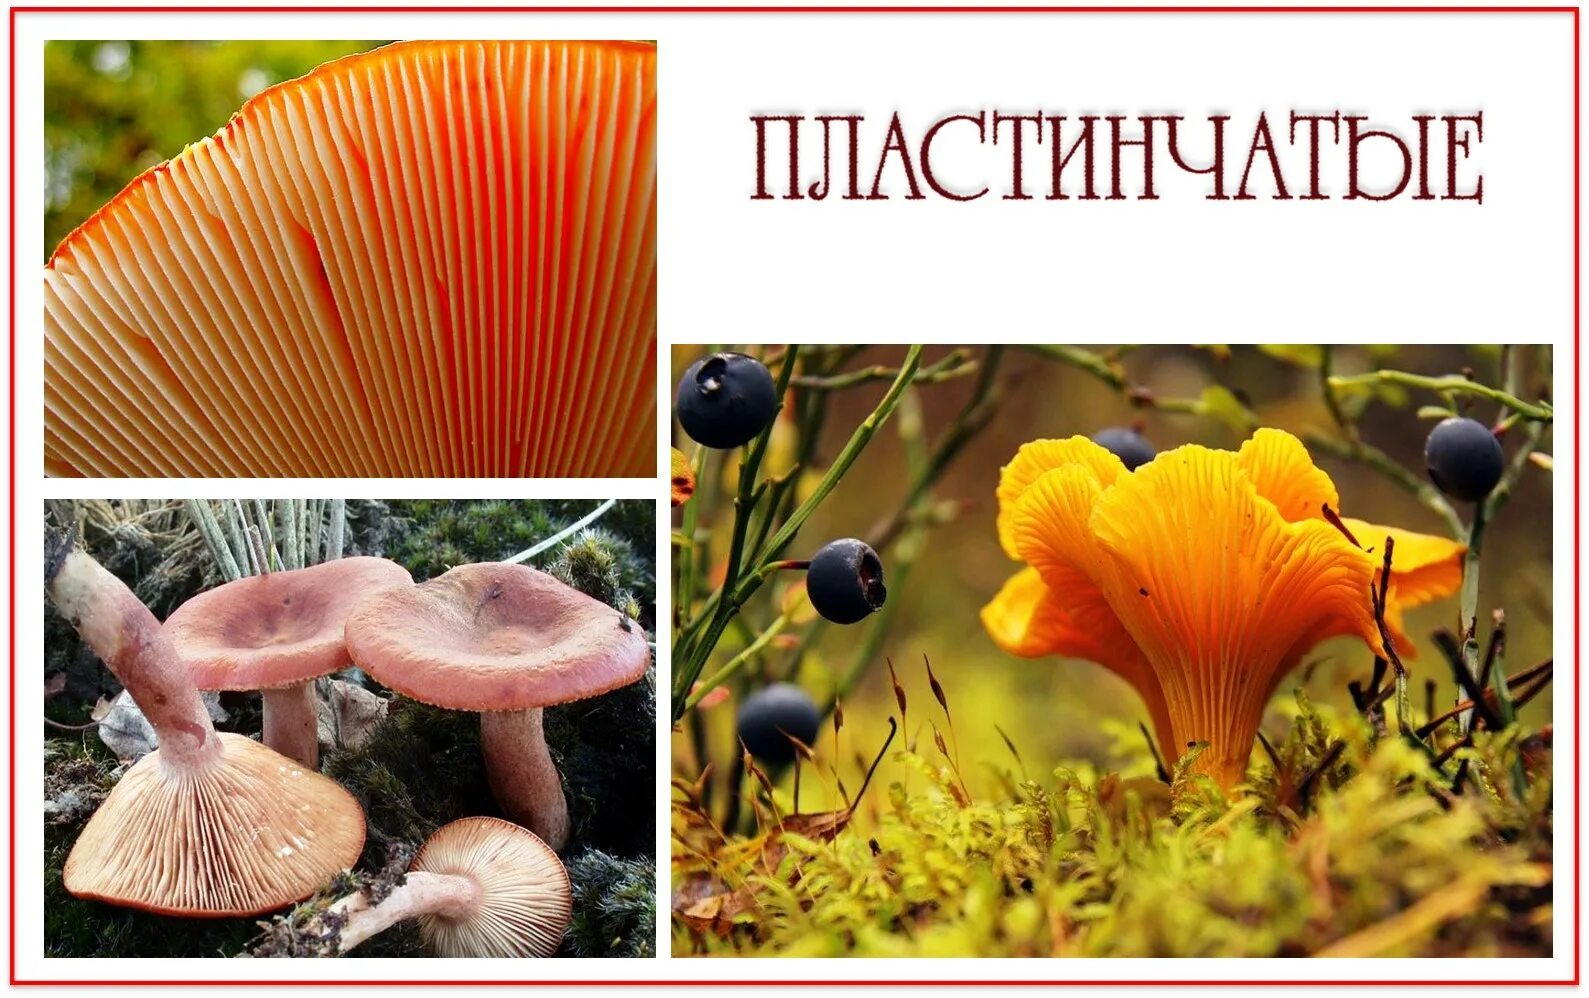 Трубчатый гименофор. Трубчатые и пластинчатые грибы. Базидиальные грибы с пластинчатым гименофором. Плакат царства грибов.